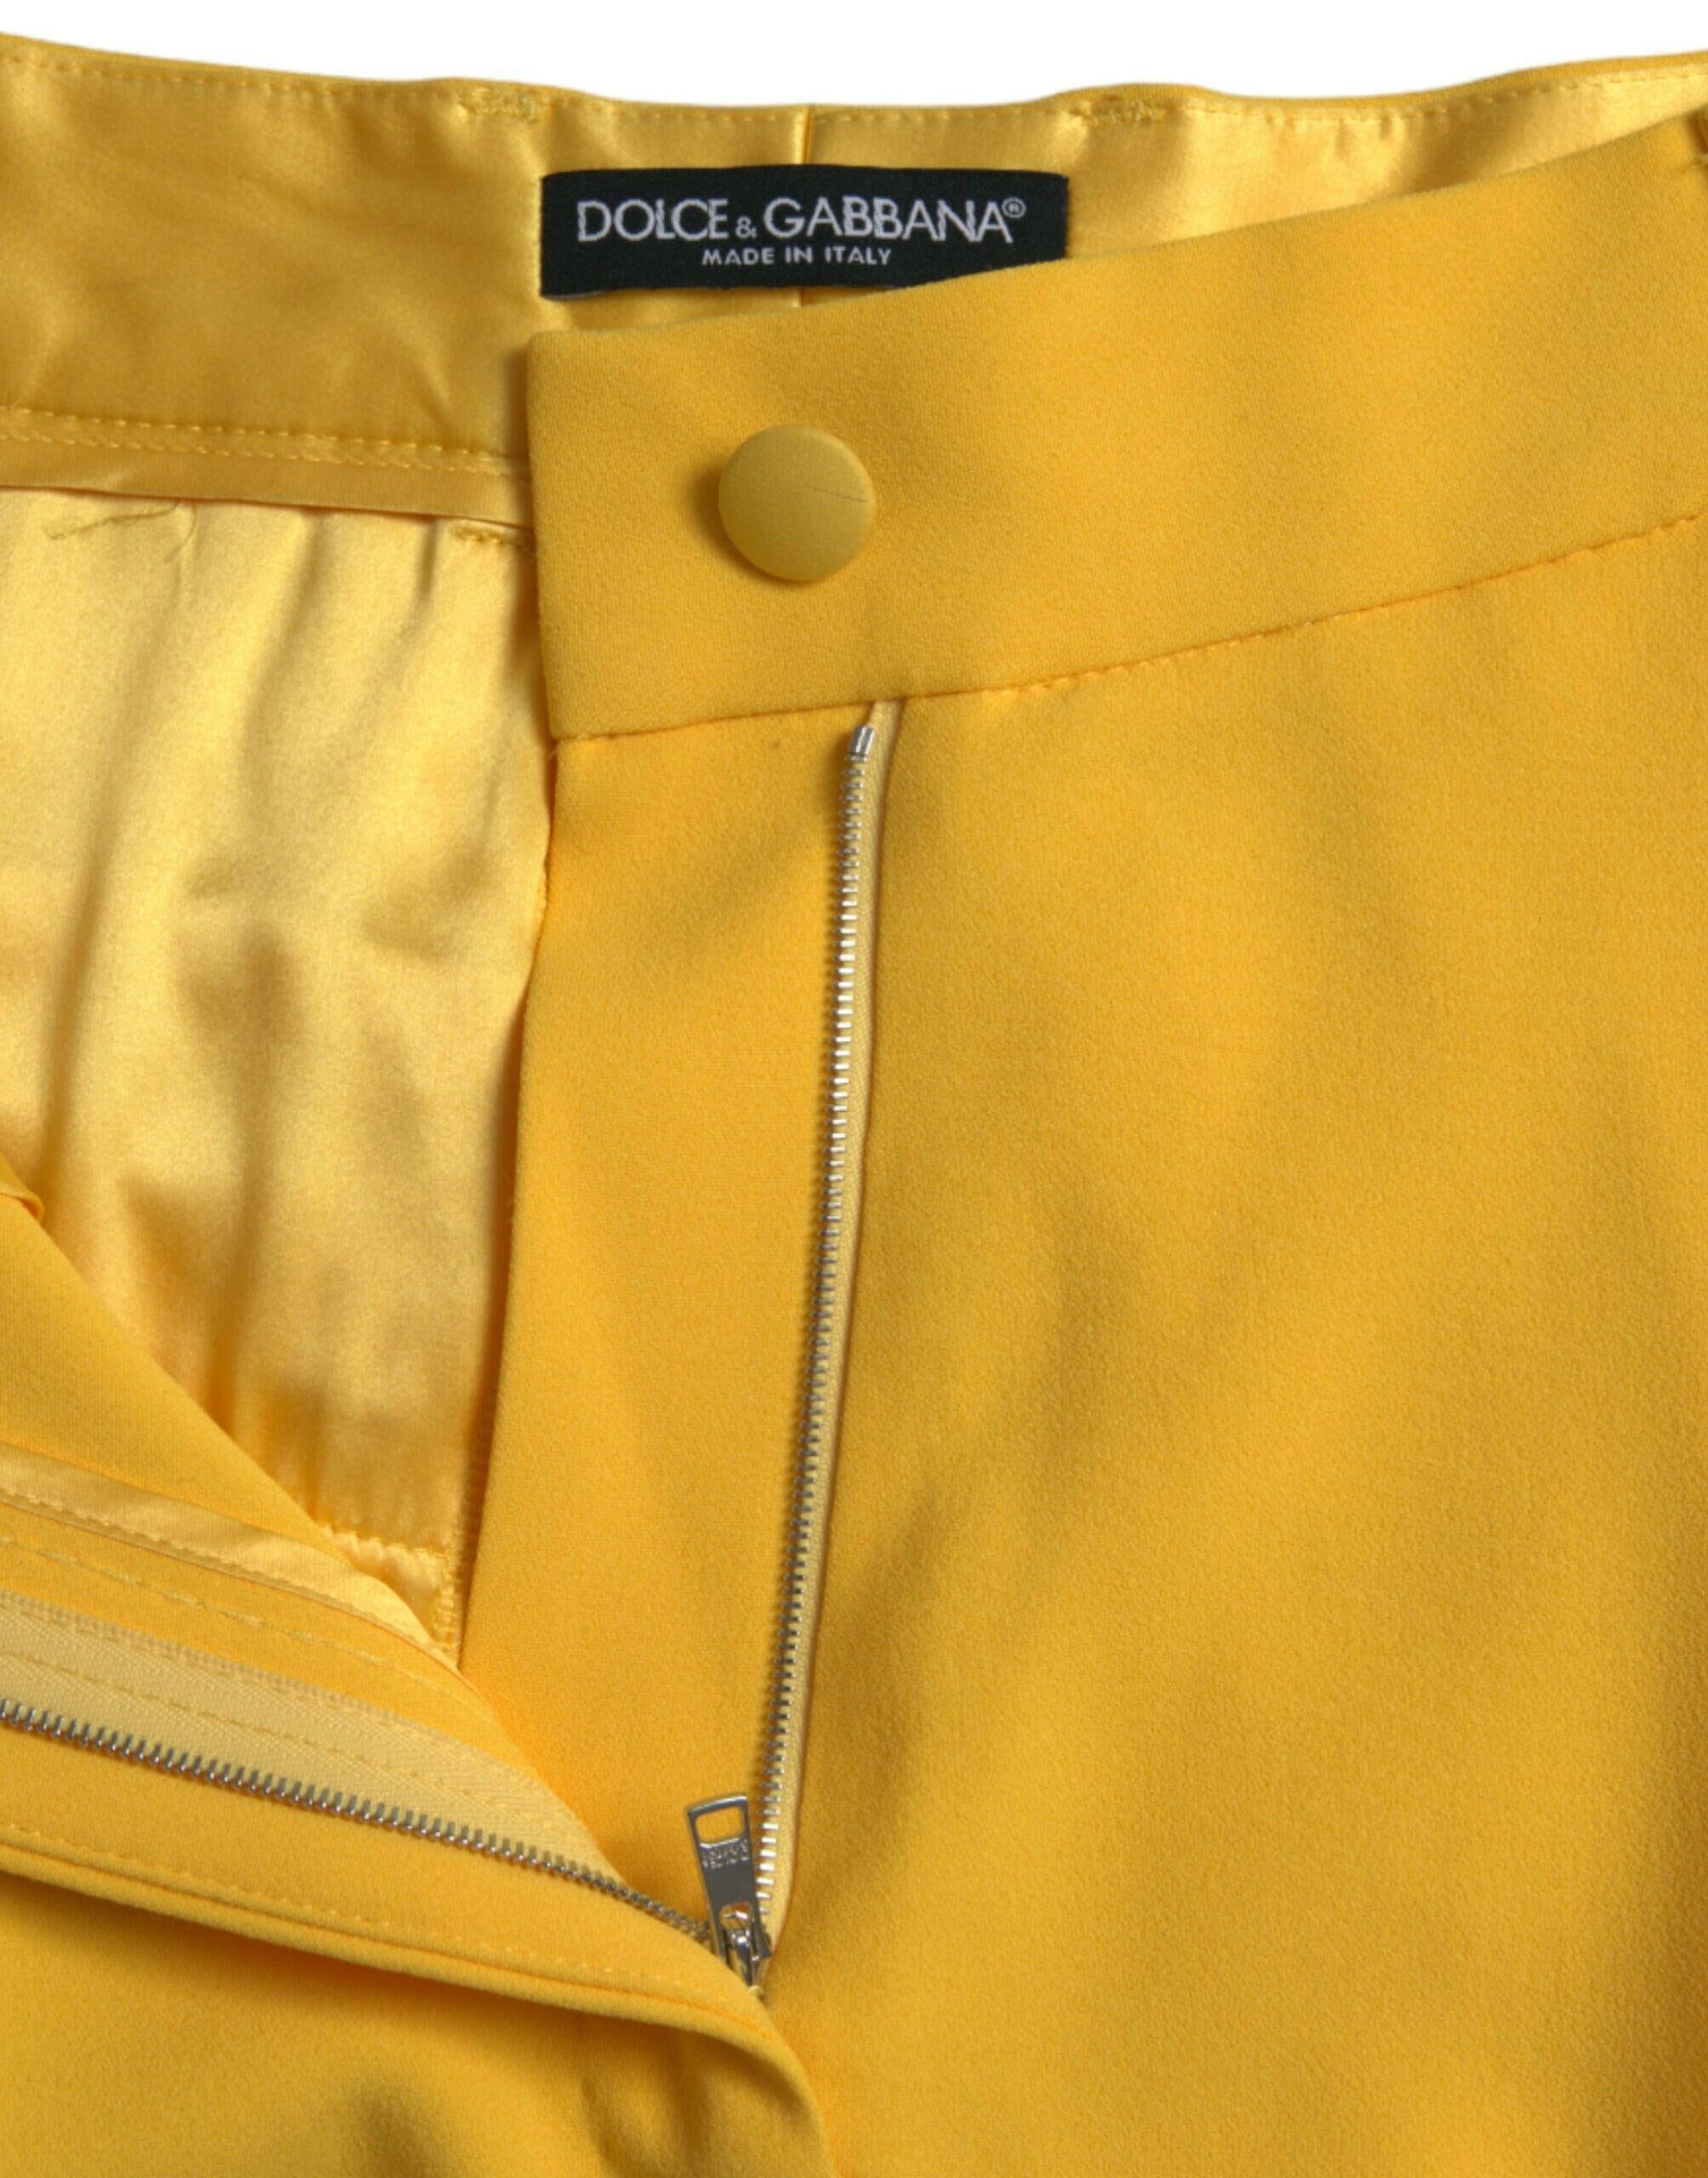 Dolce & Gabbana Yellow High Waist Hot Pants Bermuda Shorts.